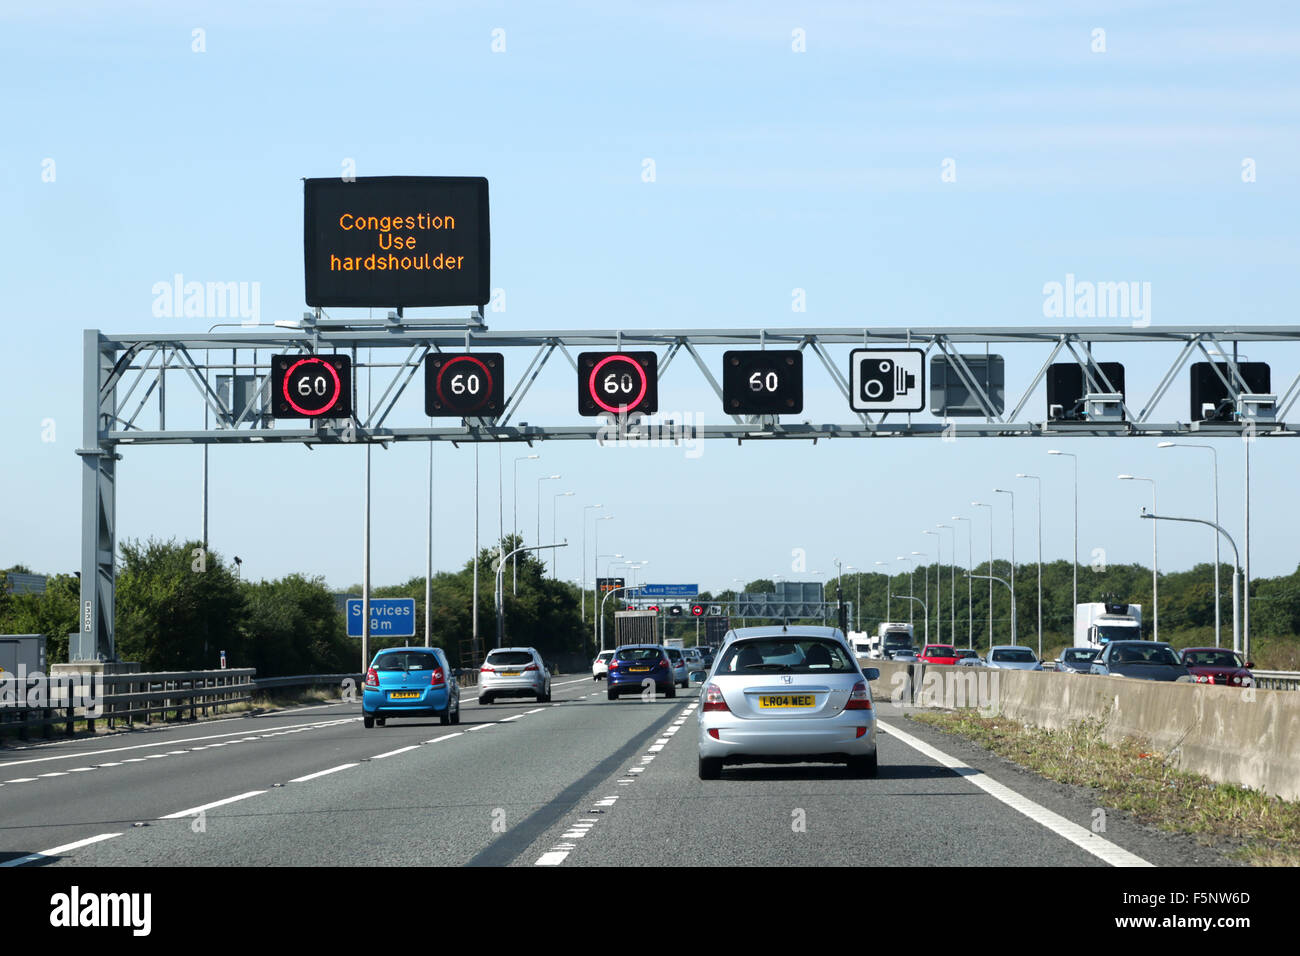 Der Verkehr auf der Autobahn m5.. Eine obenliegende Gantry zeigt Stauwarnungen voraus und Höchstgeschwindigkeit von 60 mph. speed Kameras sind an der Gantry positioniert Stockfoto